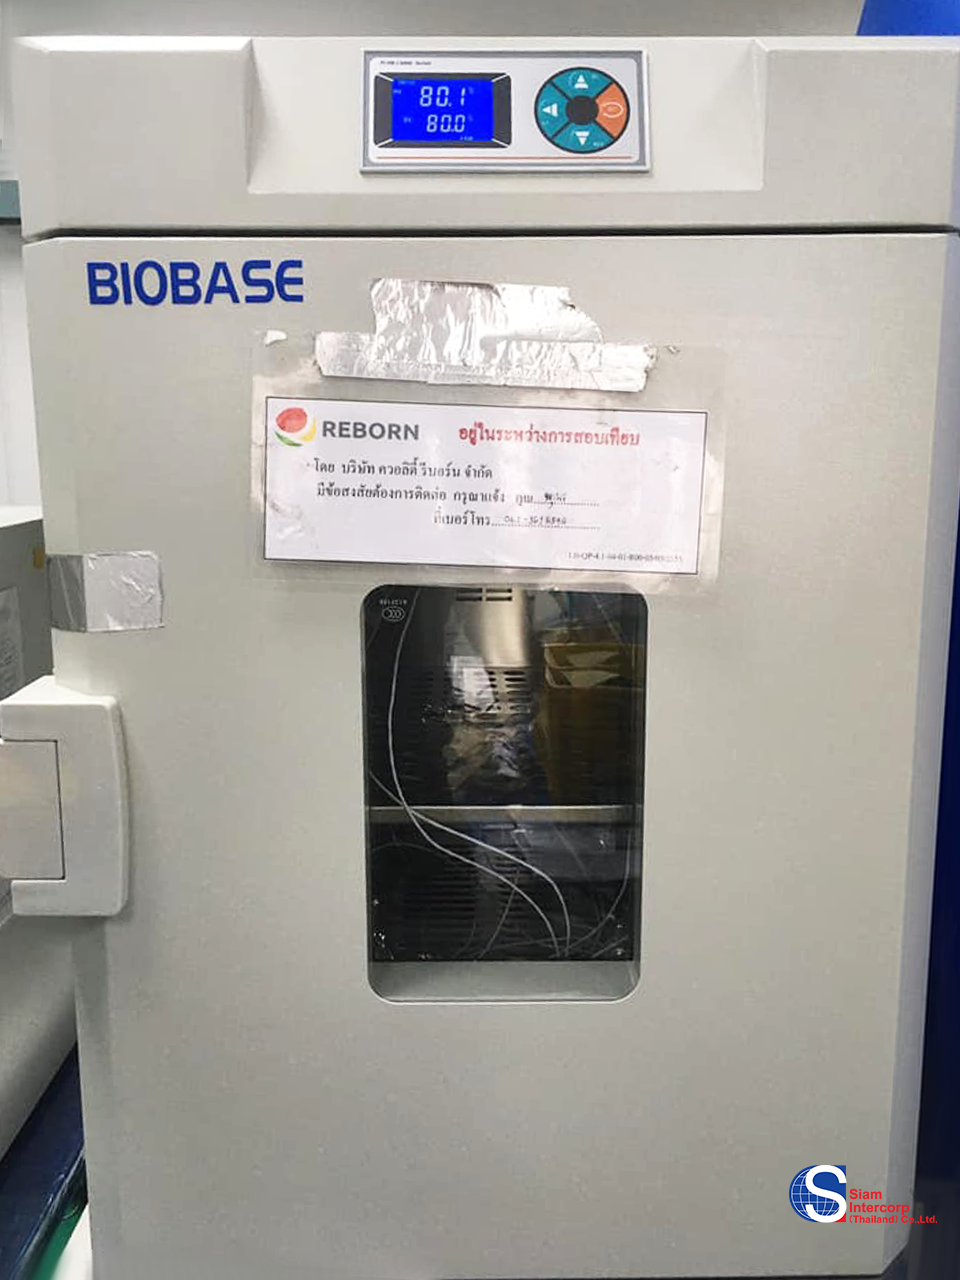 ติดตั้งตู้อบลมร้อน (Forced Air Oven) ยี่ห้อ Biobase พื้นที่จังหวัด ปทุมธานี (OW12)